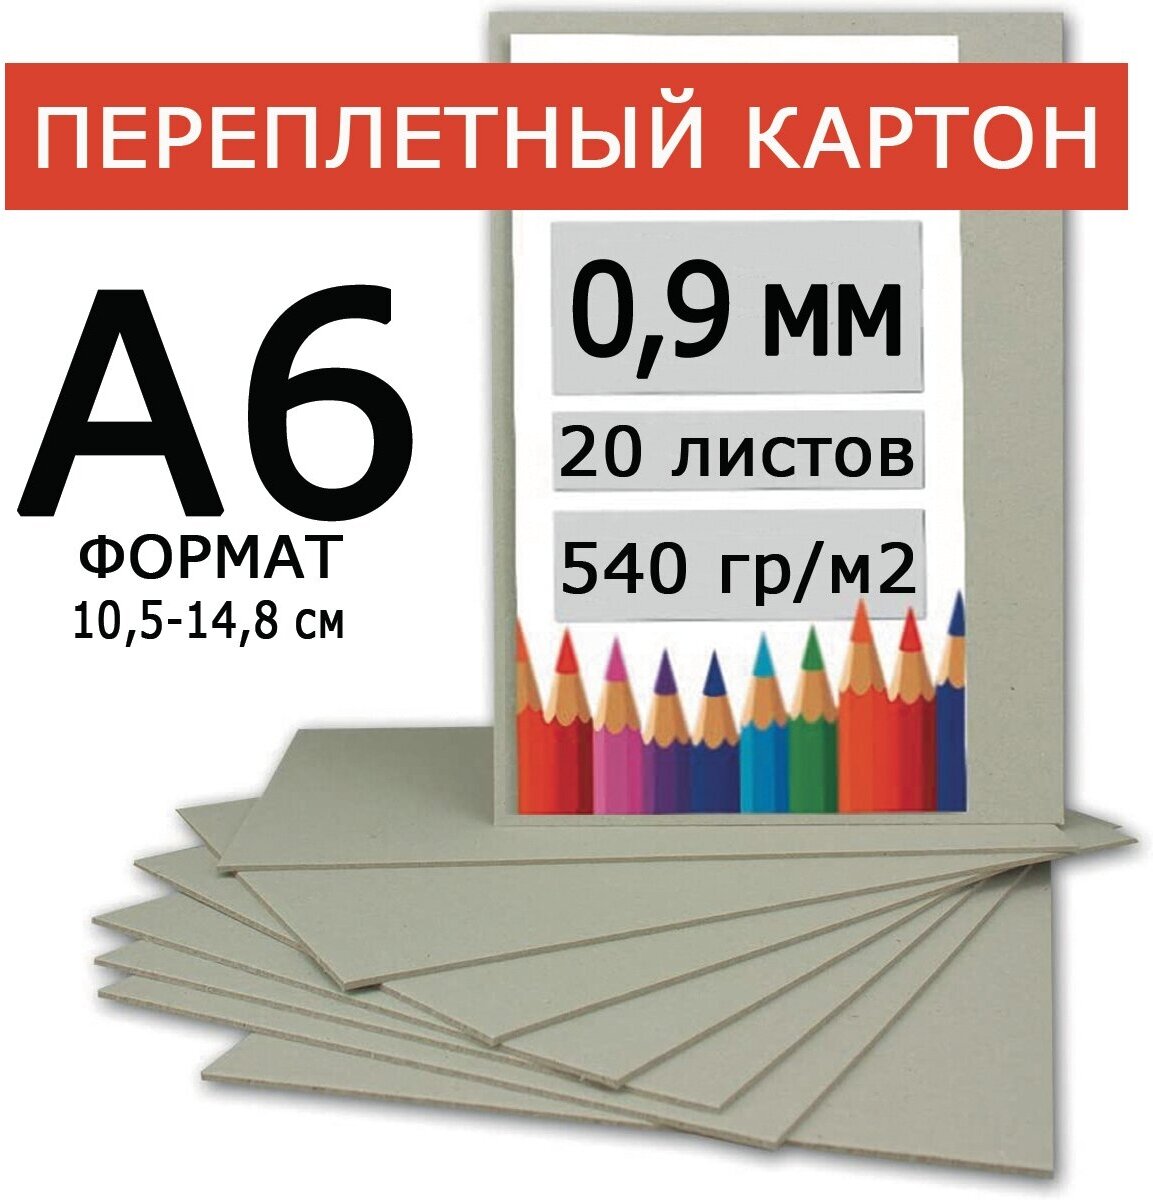 Плотный переплетный картон 0,9 мм формат А6 105*148 мм для скрапбукинга, творчества, рисования и рукоделия, 20 шт.